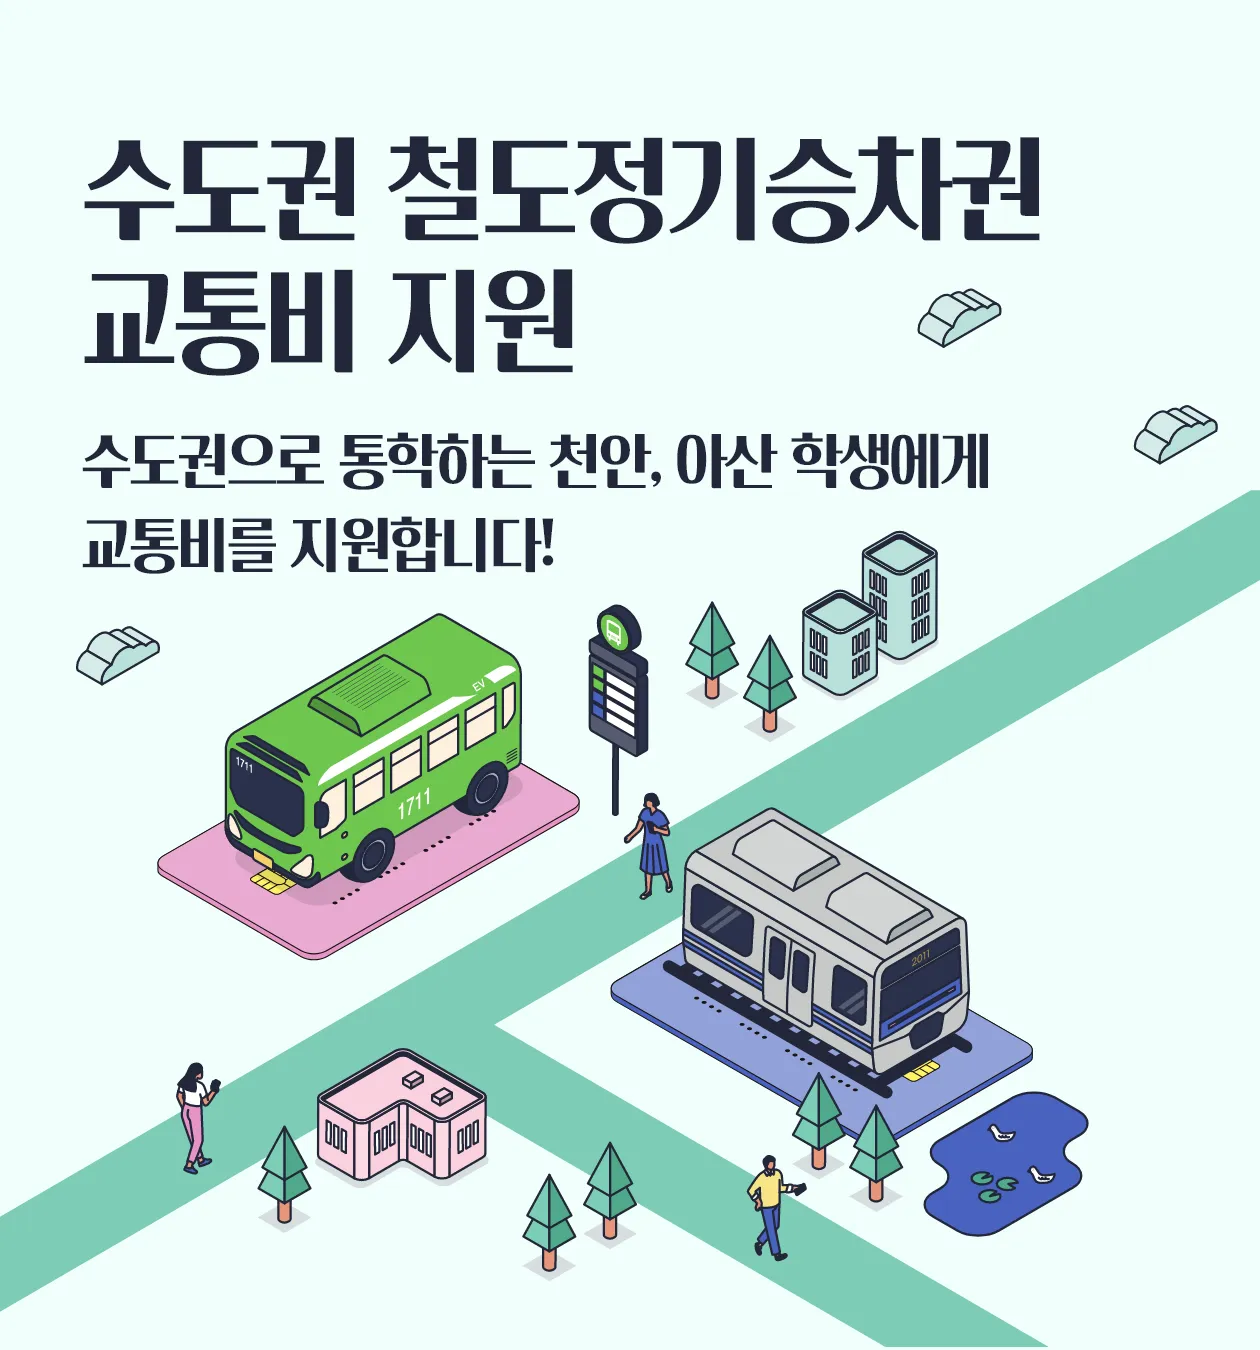 수도권 철도정기승차권 교통비 지원 수도권으로 통학하는 천안, 아산 학생에게 교통비를 지원합니다.